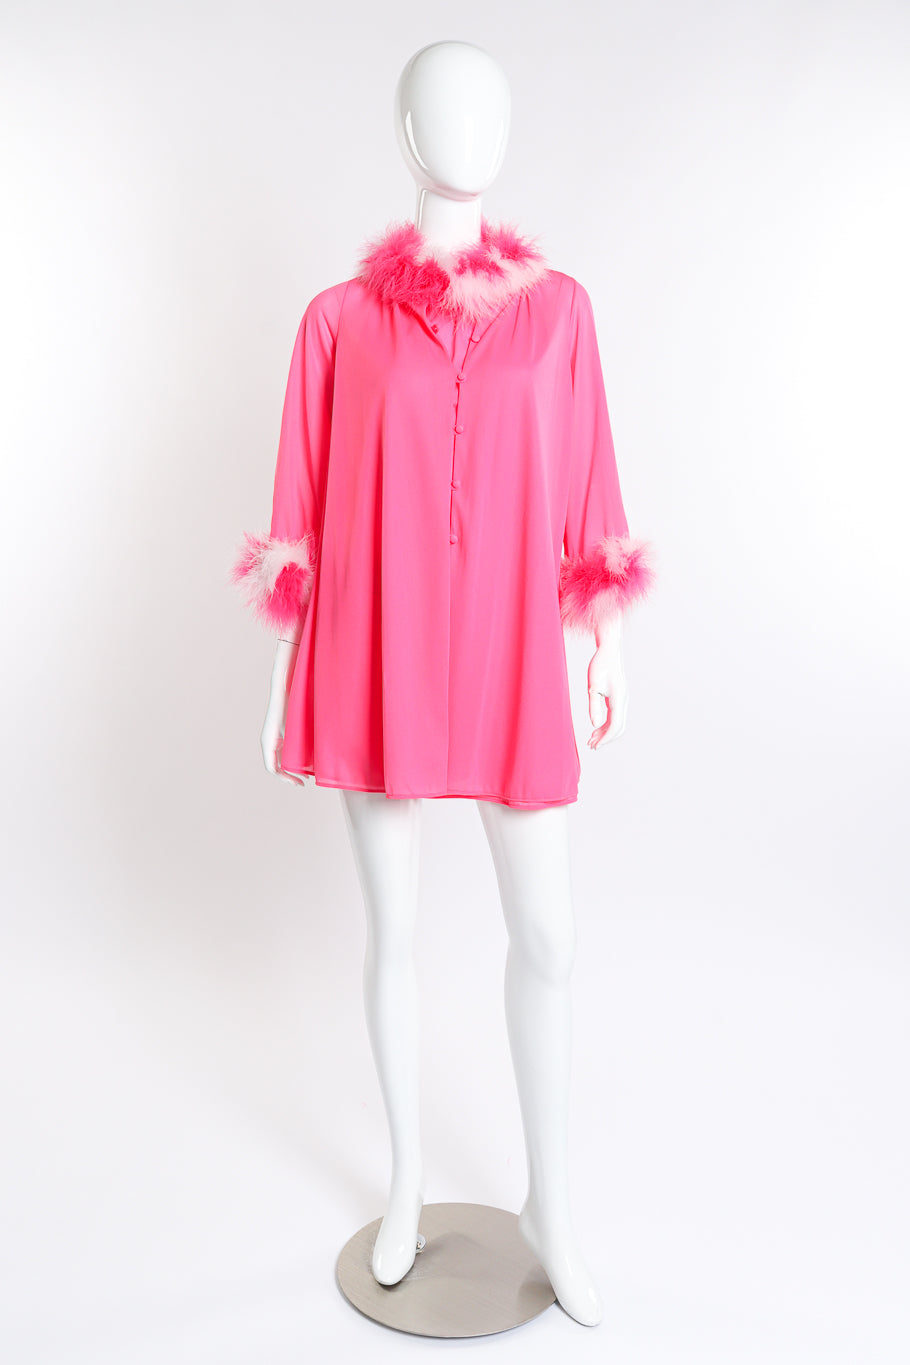 Vintage Flair Marabou Trim Top & Dress Set front on mannequin @recess la